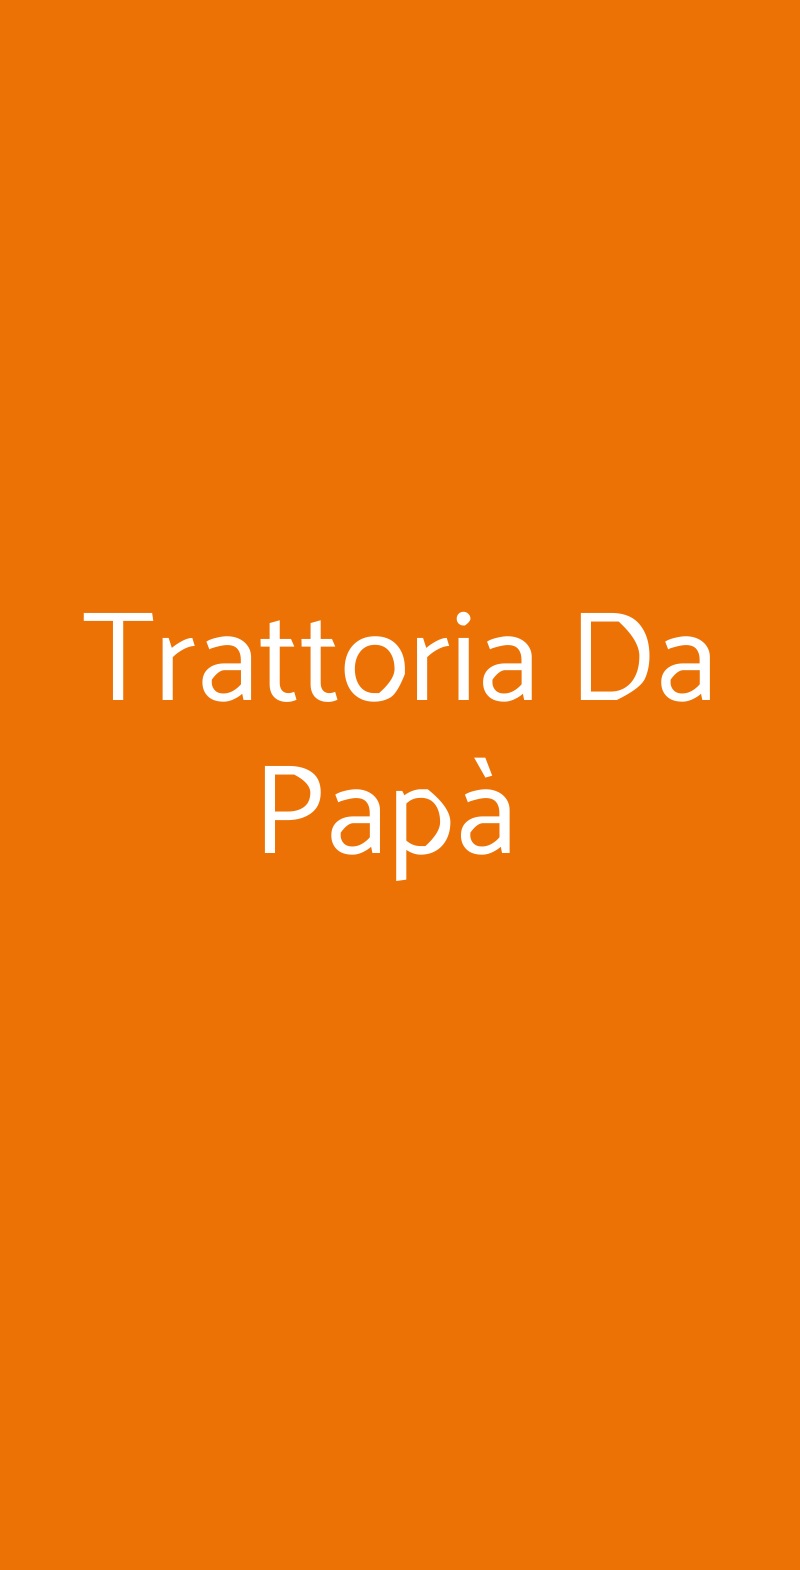 Trattoria Da Papà  Napoli menù 1 pagina